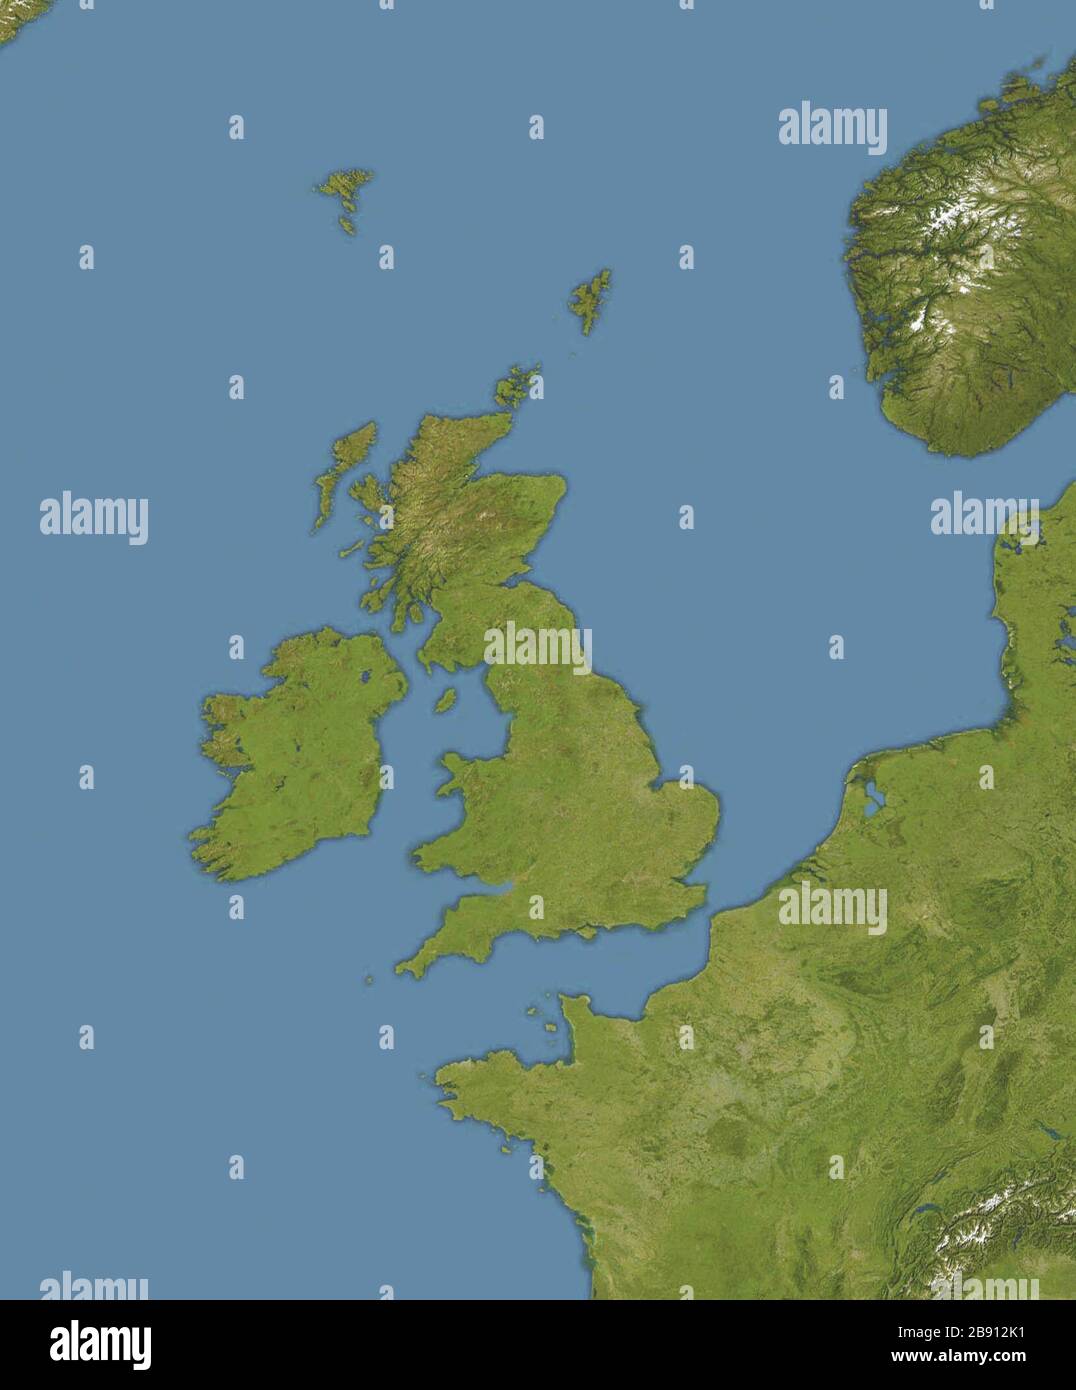 "Inglés: mapa de ubicación de los océanos de todo el Reino Unido e Irlanda la proyección equirectangular, N/S estiramiento del 150 %. Límites geográficos del mapa: N: 65° N S: 45° N W: 15° W E: 10°E; 19 de diciembre de 2008 (19 de diciembre de 2008 (fecha de carga original); trasladado desde en.wikipedia (texto original : el propio trabajo, versión recortada de archivo:Europa imagen satelital mapa de ubicación.jpg, que es una recortada y color-versión editada del archivo:Todo el mundo -la tierra y los océanos, 12000.jpg por la NASA/Goddard Space Flight Center); Bellhalla. Uploader original fue Bellhalla en en.wikipedia; ' Foto de stock